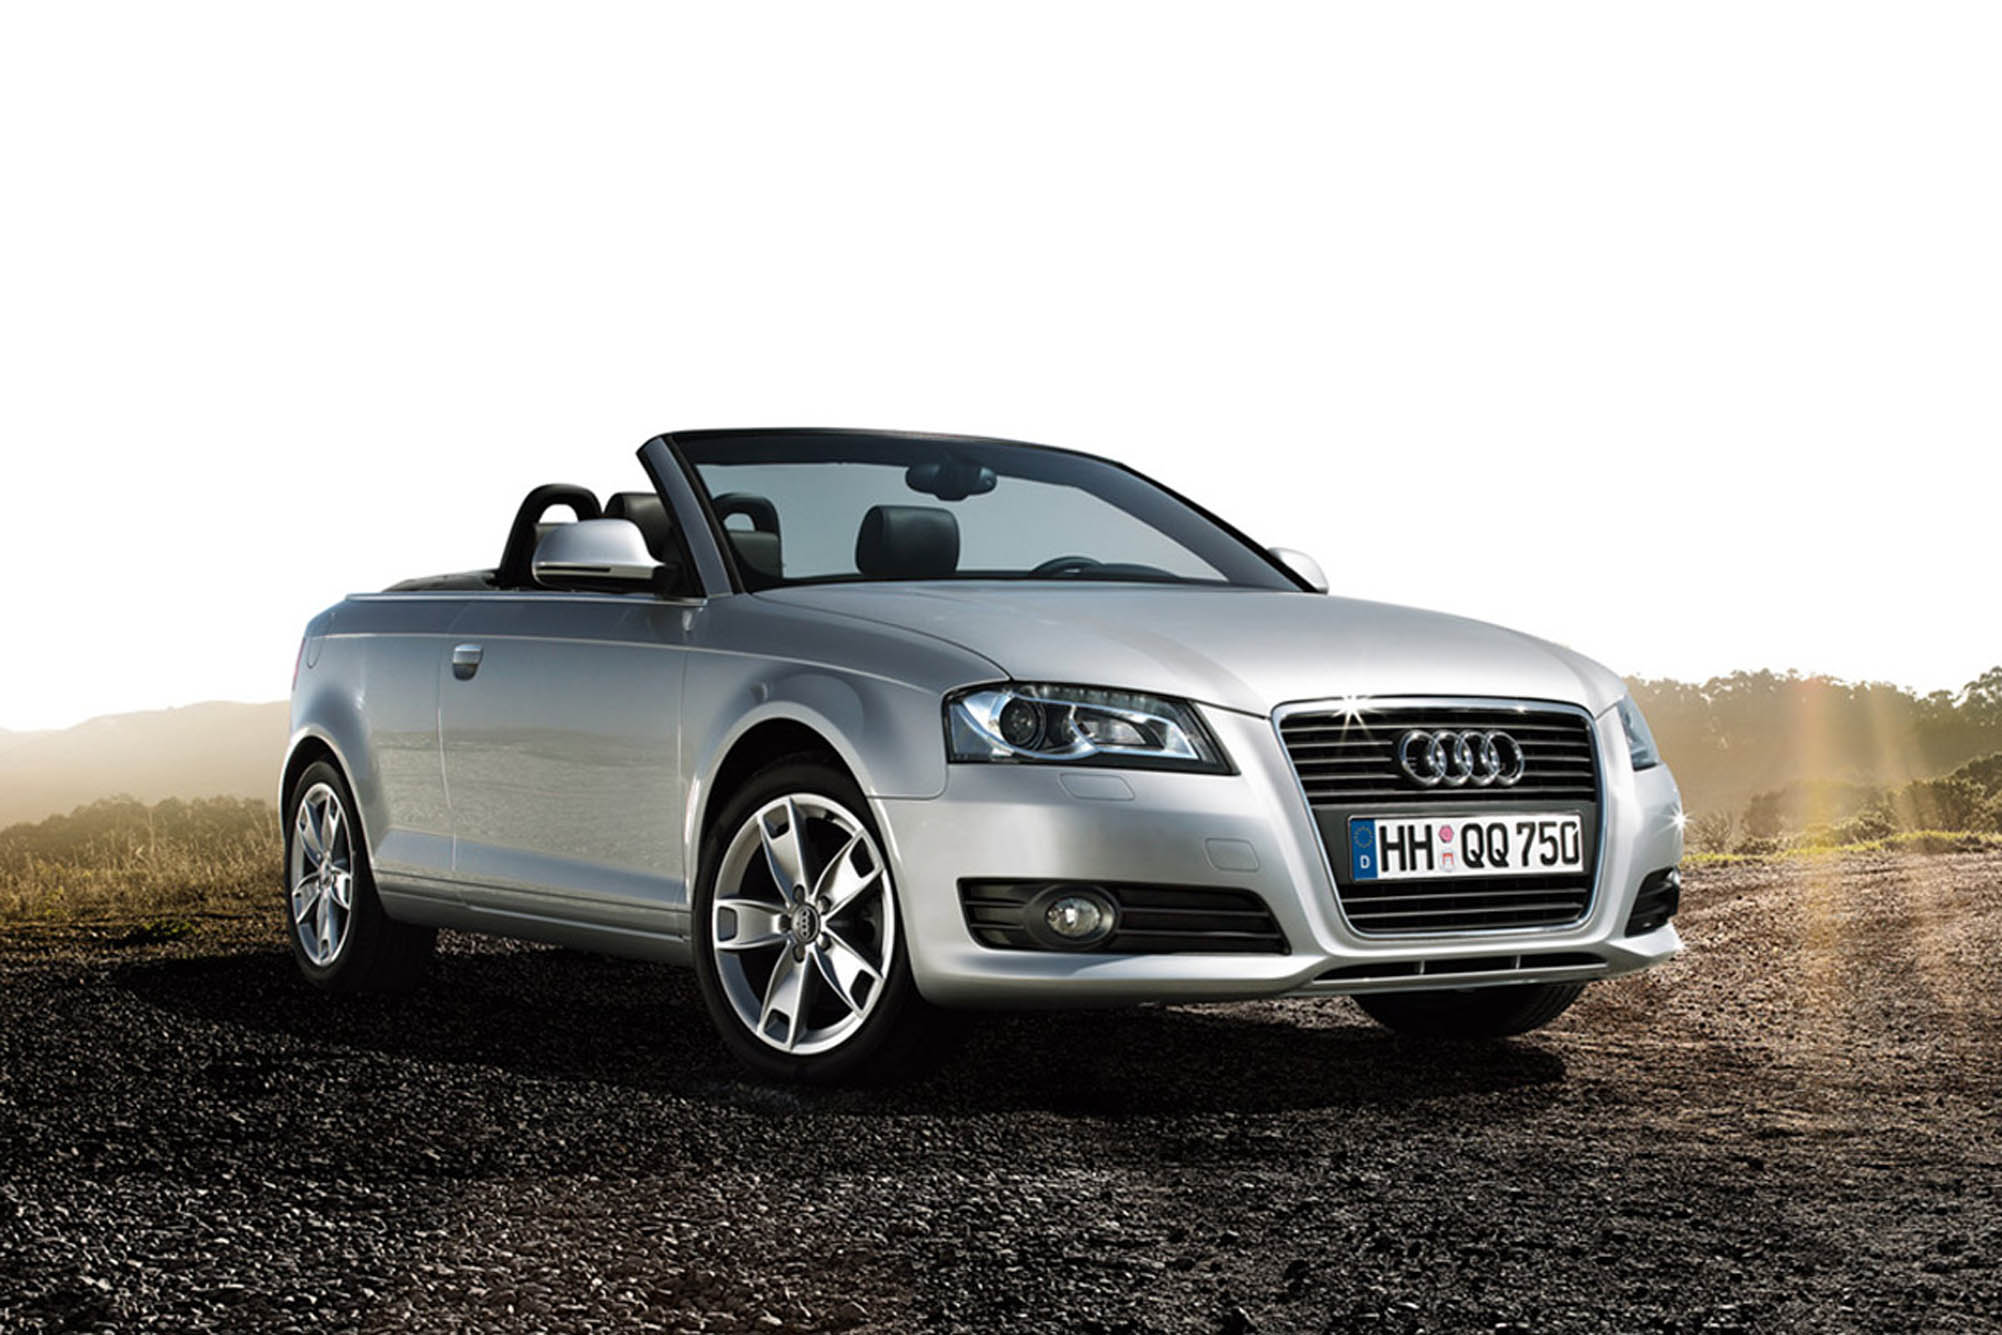 Image principale de l'actu: Audi a3 cabriolet enfin le printemps 2008 